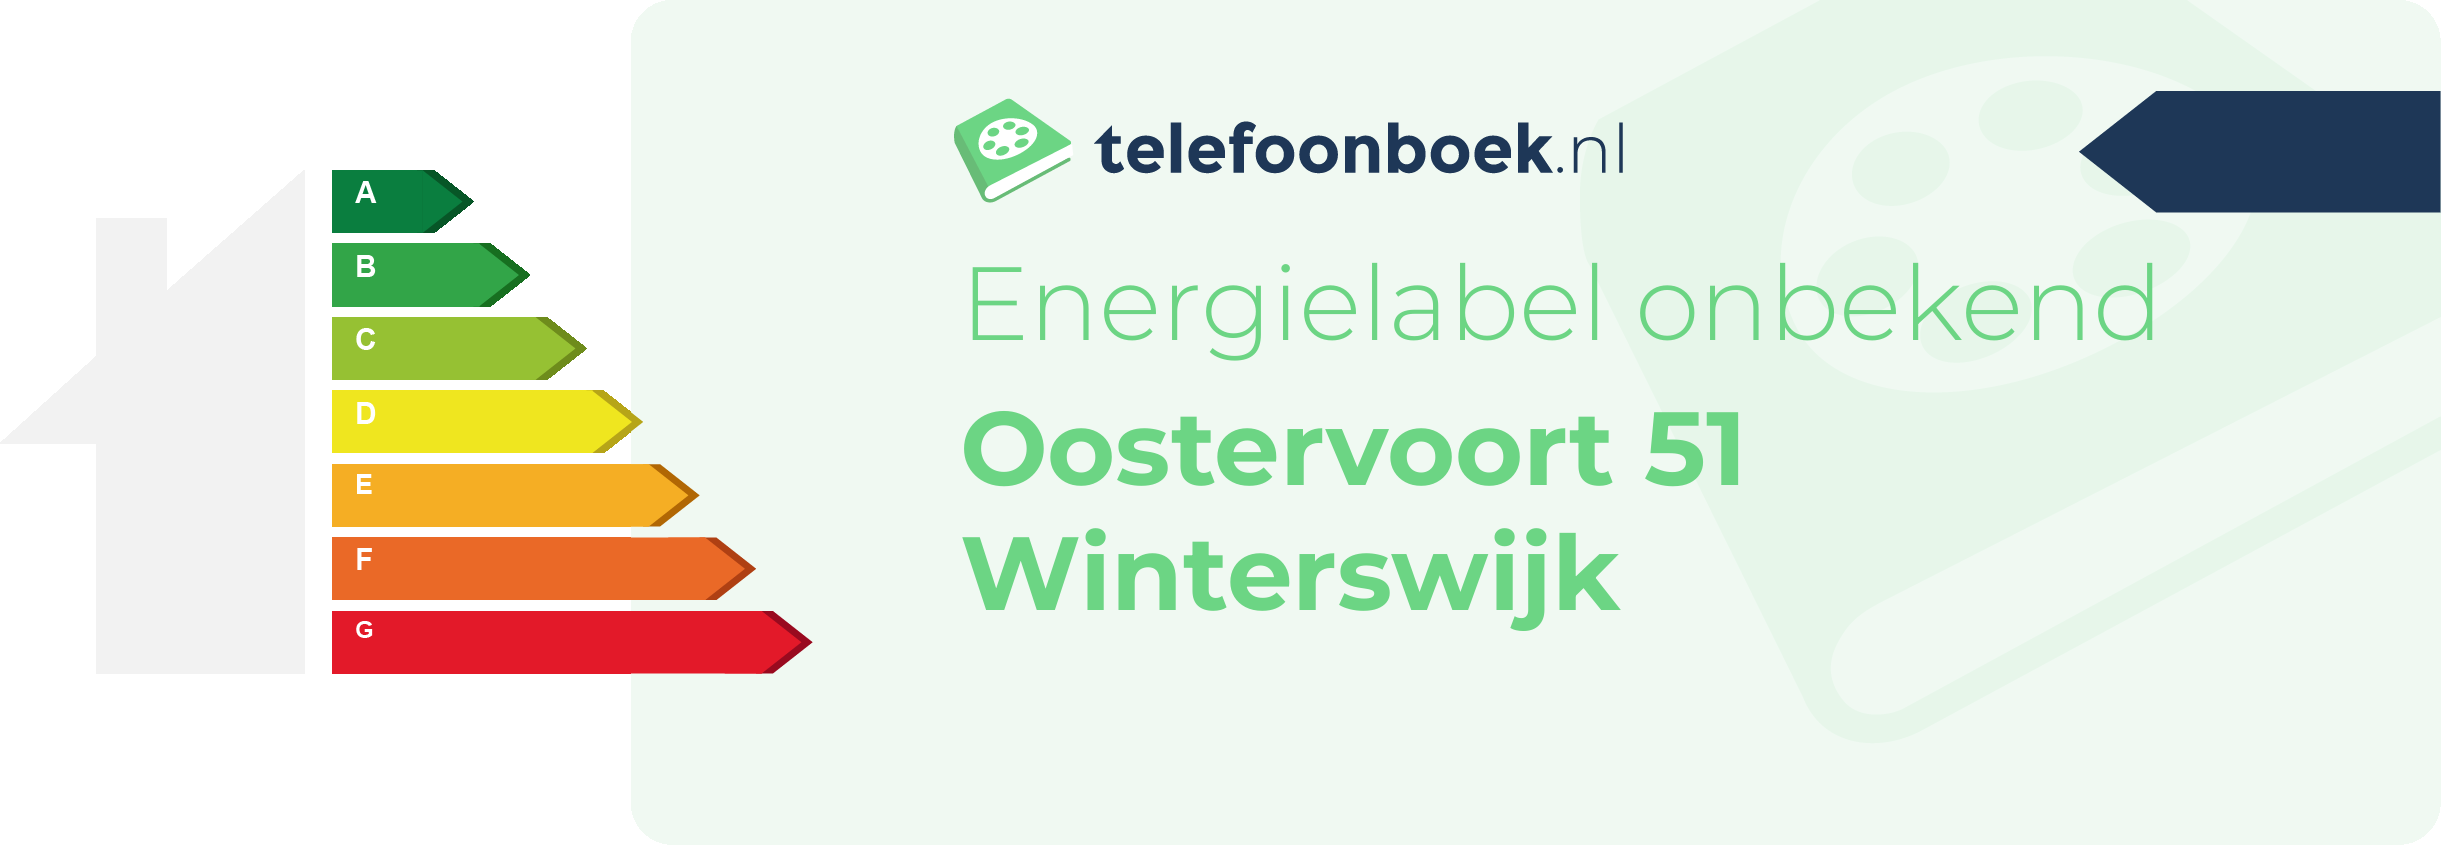 Energielabel Oostervoort 51 Winterswijk